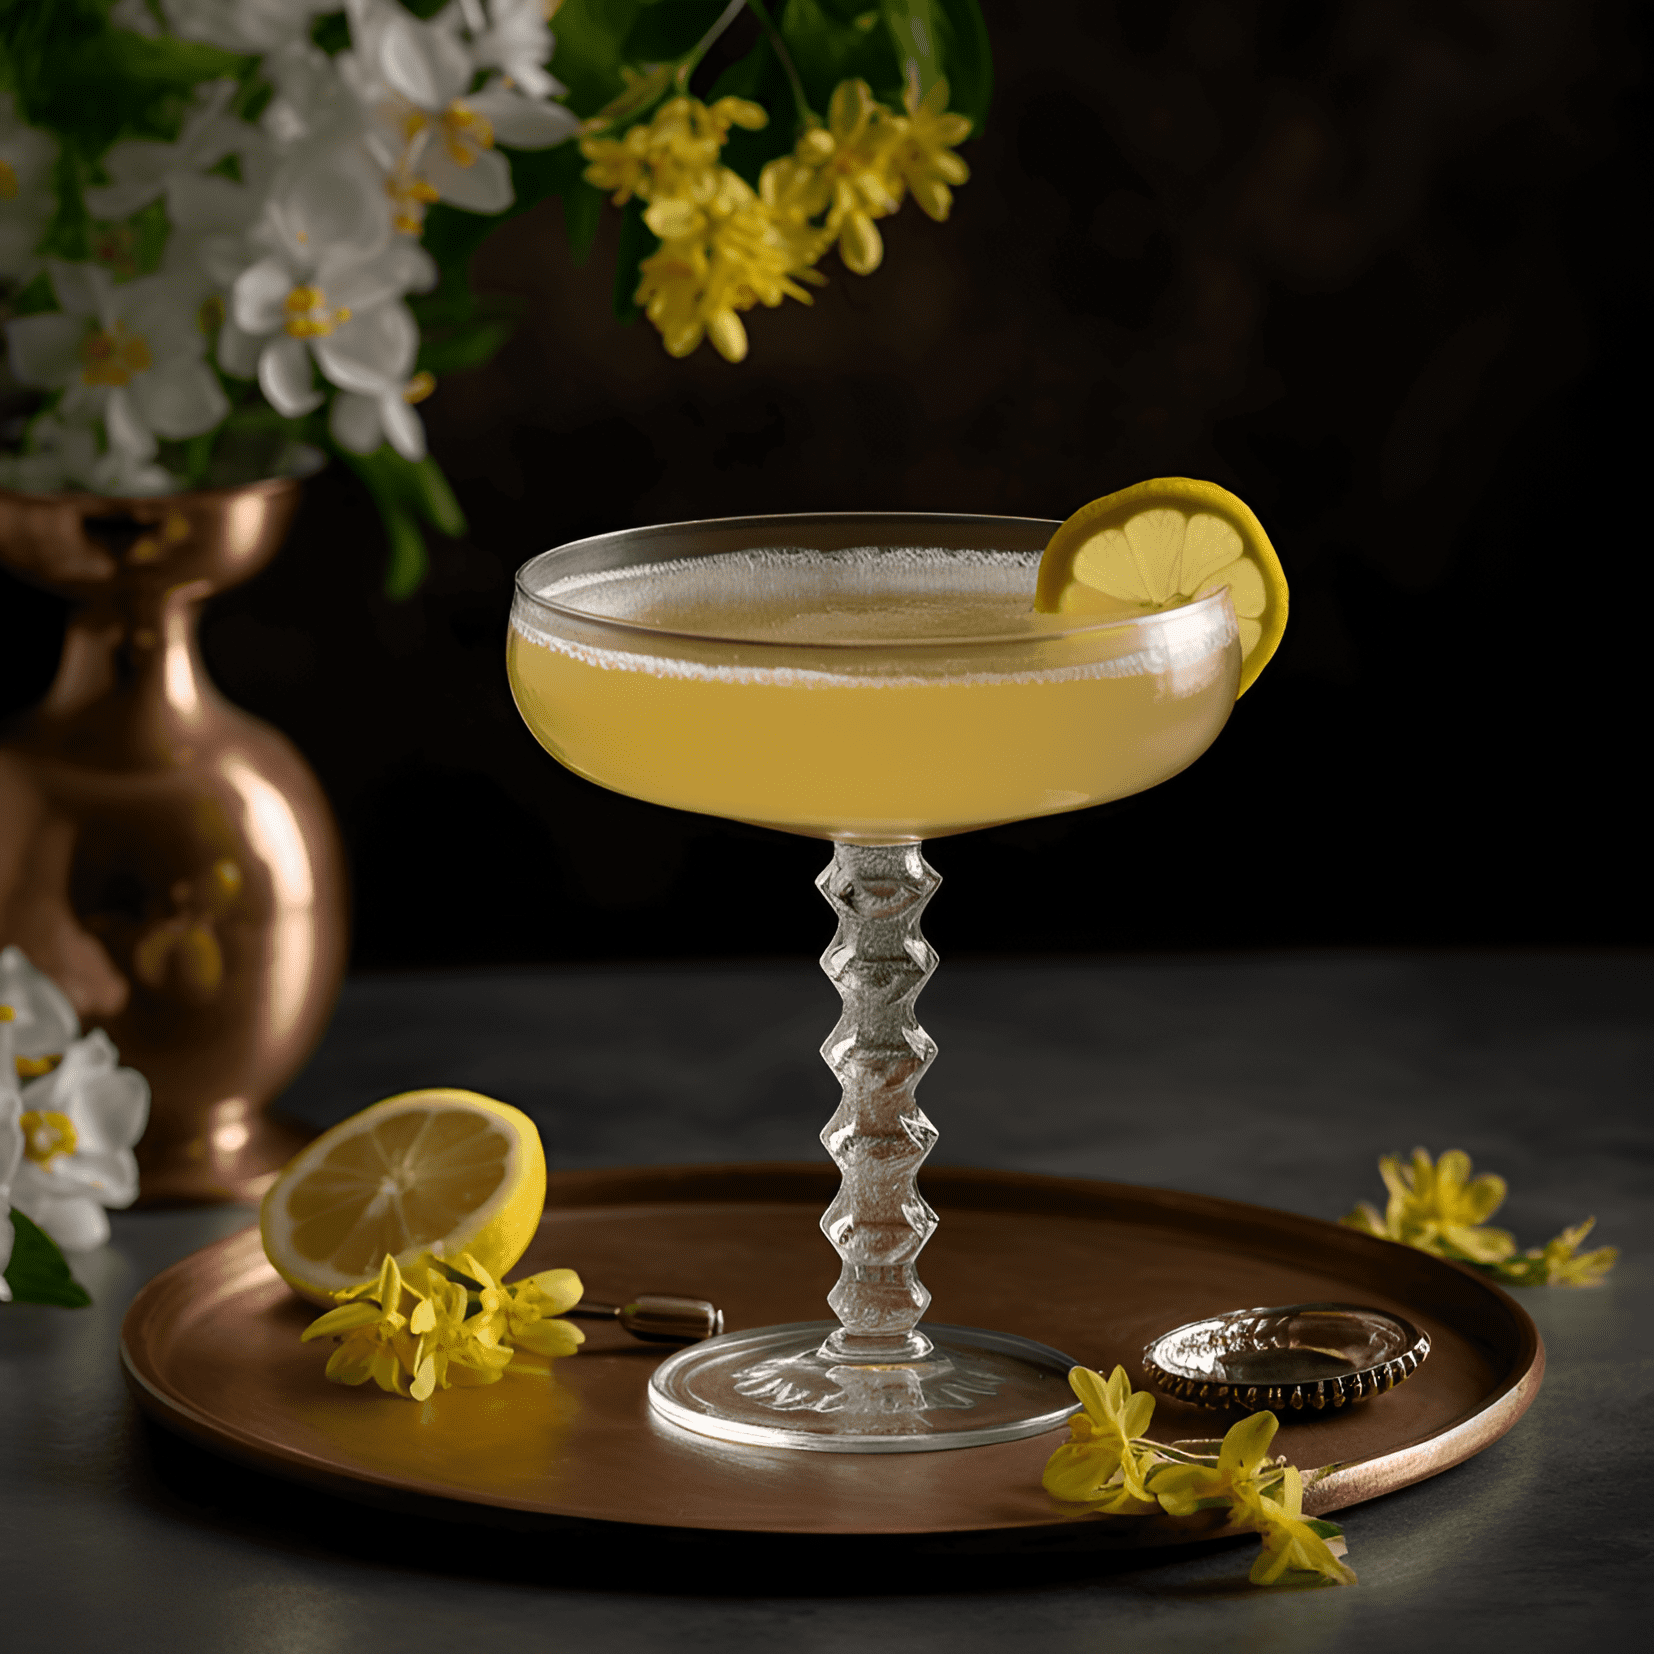 Bee's Knees Cóctel Receta - El cóctel Bee's Knees es un equilibrio delicioso de sabores dulces, ácidos y florales. El jarabe de miel agrega una dulzura rica, mientras que el jugo de limón proporciona una acidez refrescante y picante. Los botánicos del gin brillan, dando a la bebida un sabor complejo y satisfactorio.